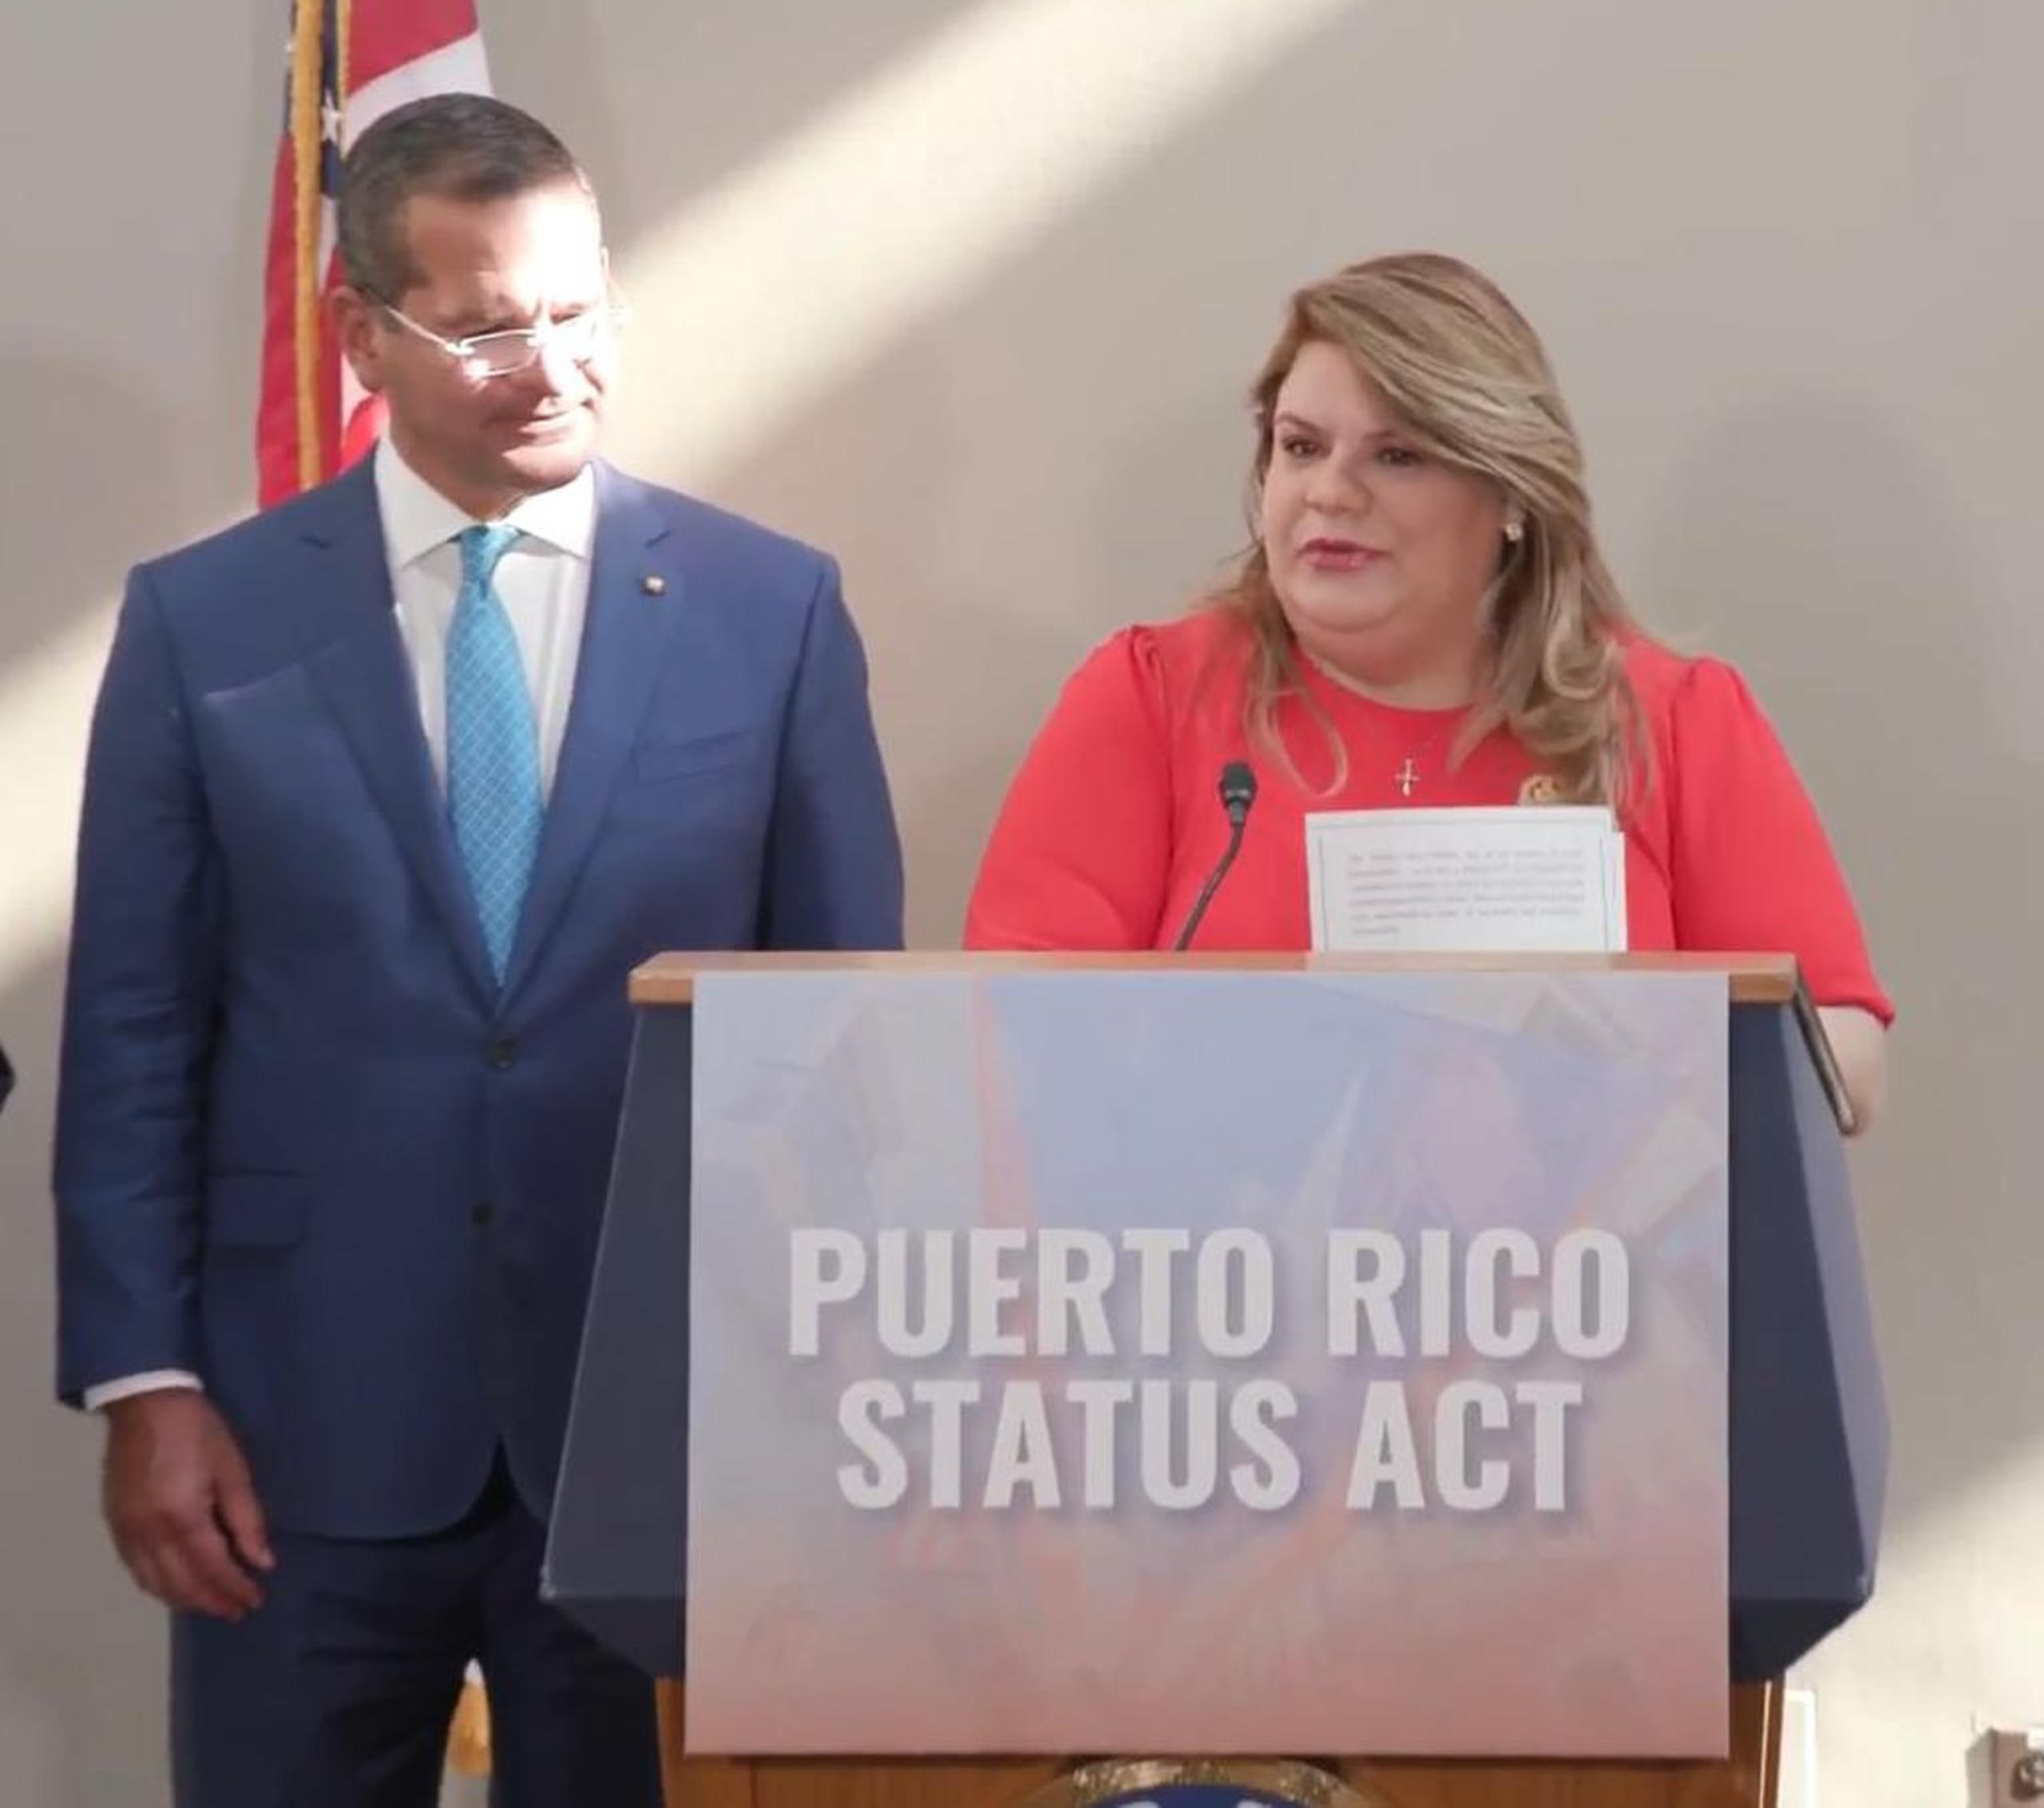 El gobernador de Puerto Rico, Pedro Pierluisi, y la comisionada residente, Jenniffer González, tuvieron un intercambio cordial durante el anuncio en la capital federal.